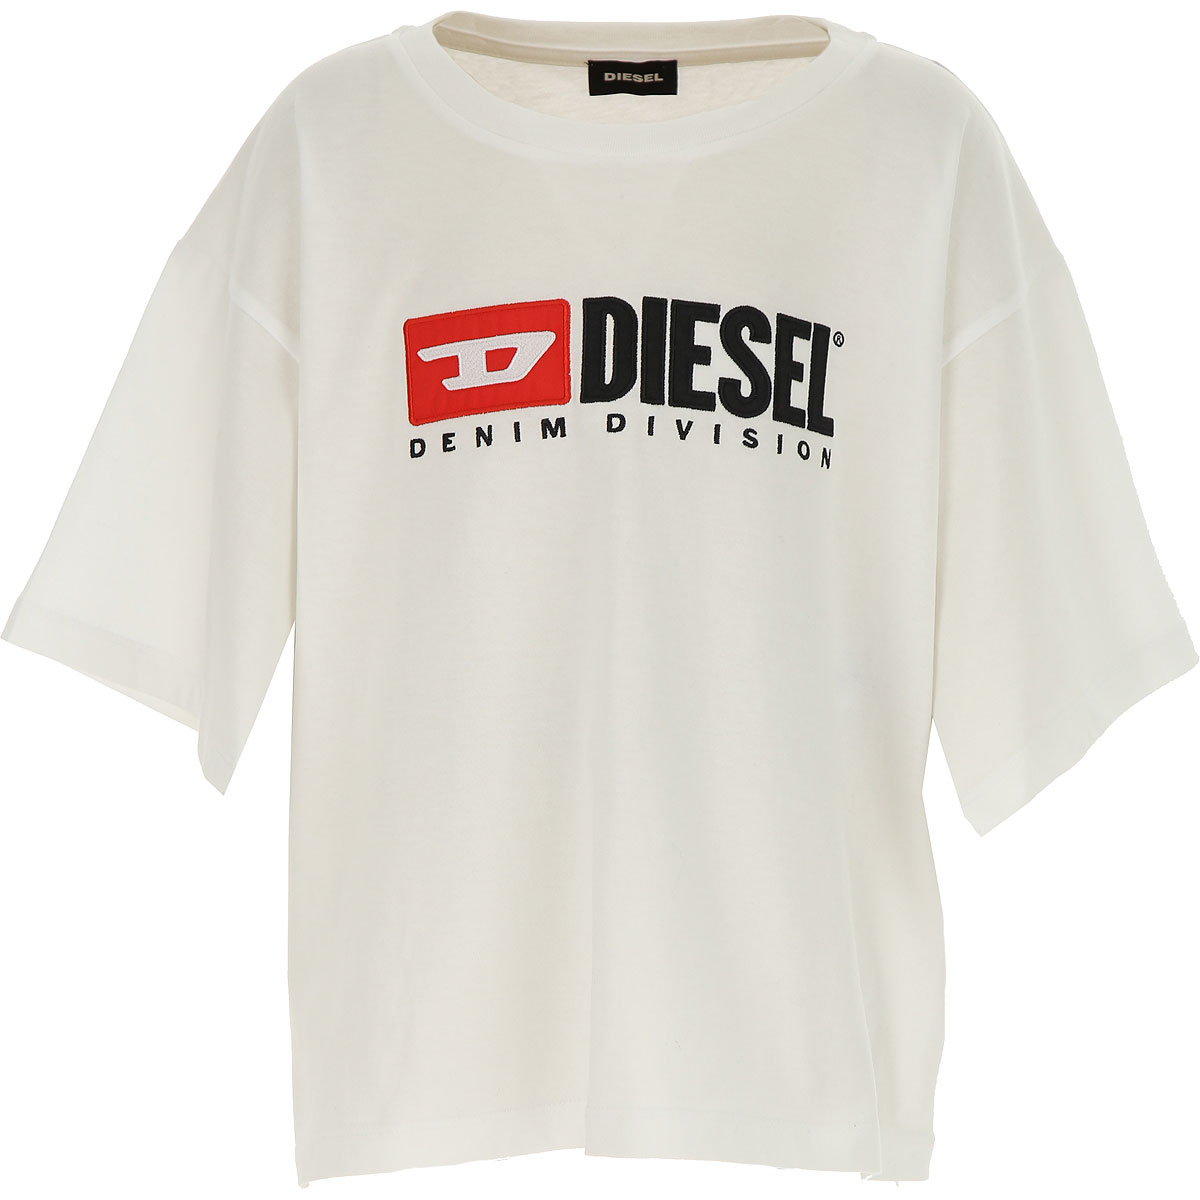 Diesel Kinder T-Shirt für Mädchen Günstig im Sale, Weiss, Baumwolle, 2017, 10Y 12Y 8Y